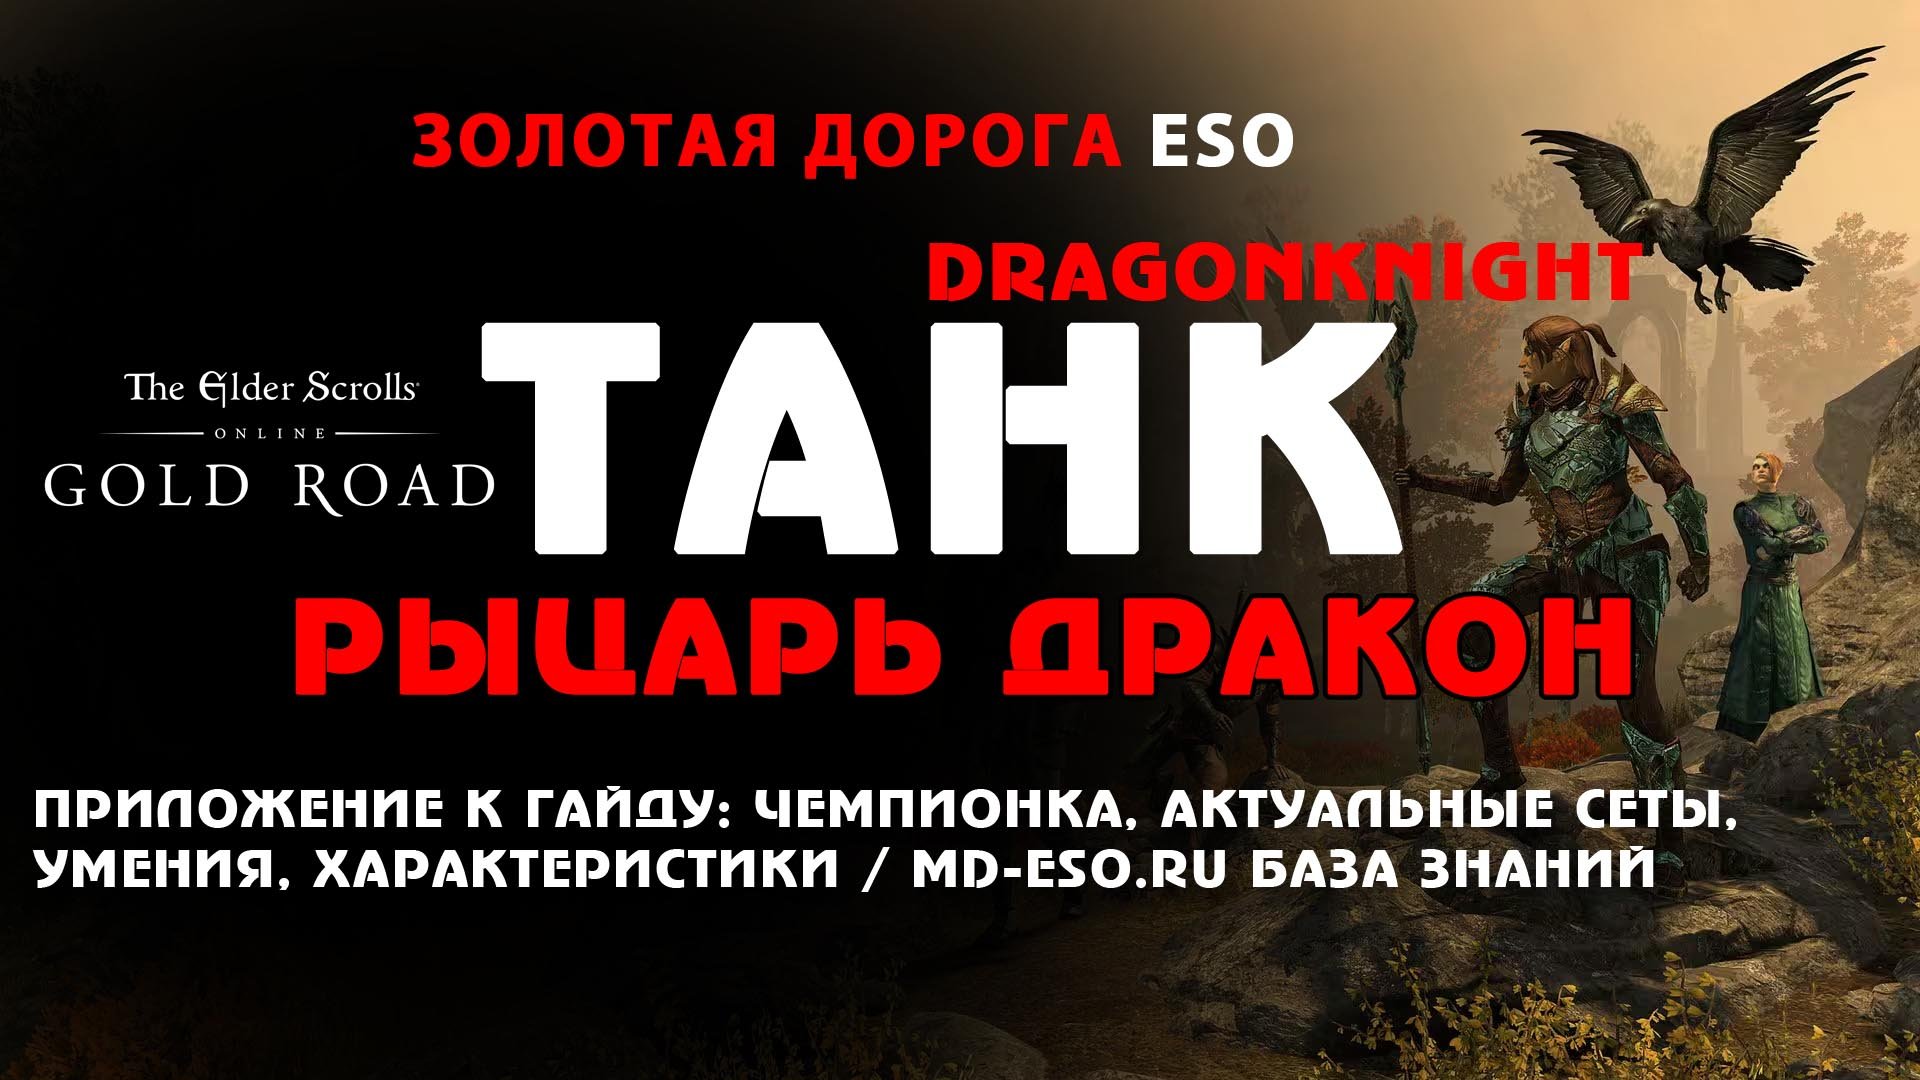 Рыцарь дракона танк PVE, имперец, Золотая дорога, приложение к гайду / ESO Gold Road tank DK guide